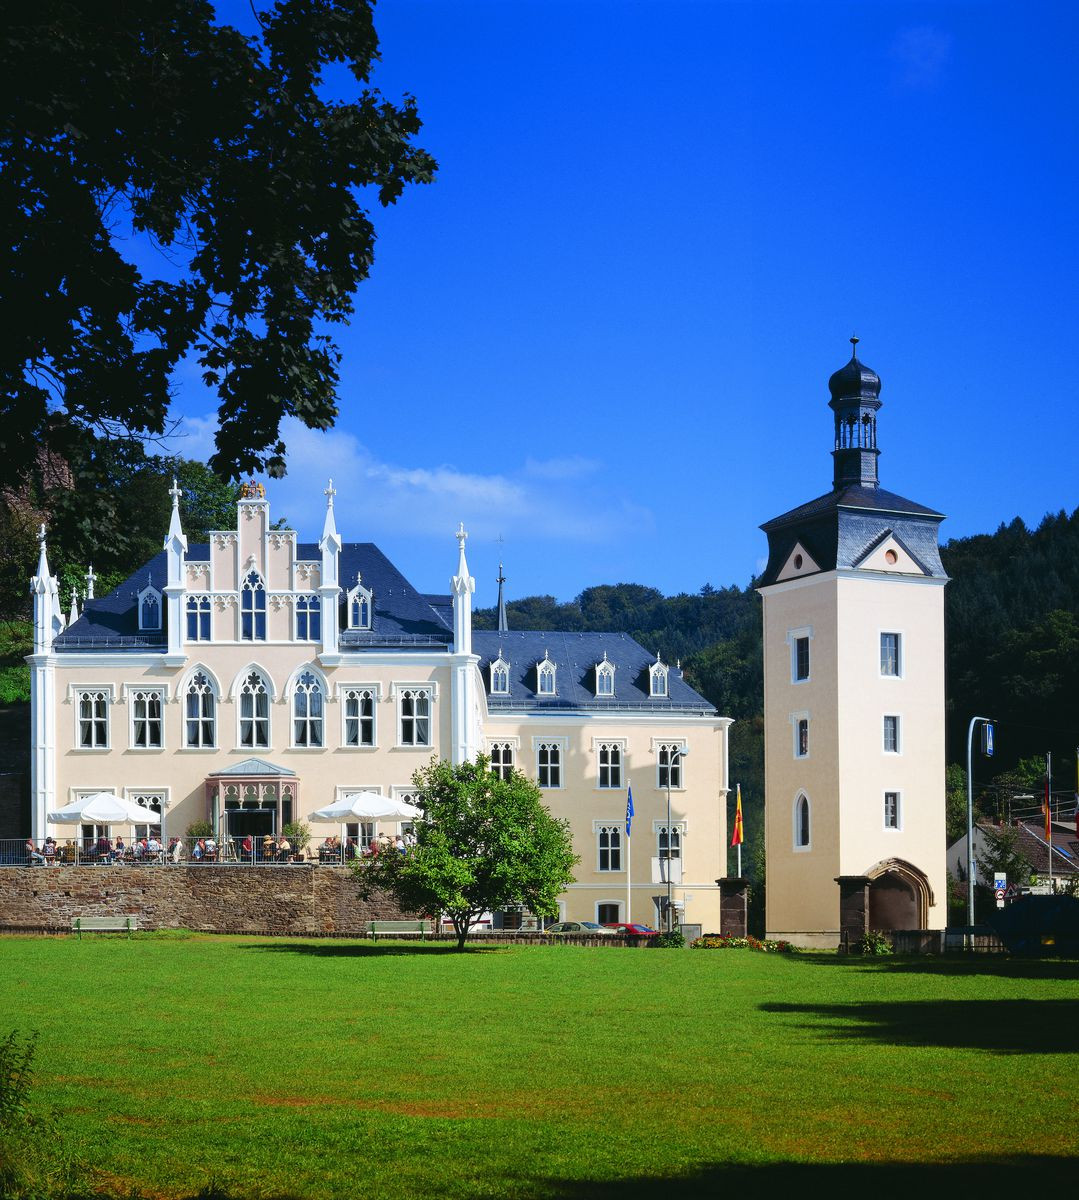 Schloss Sayn Hochzeit
 Bendorf Schloss Sayn